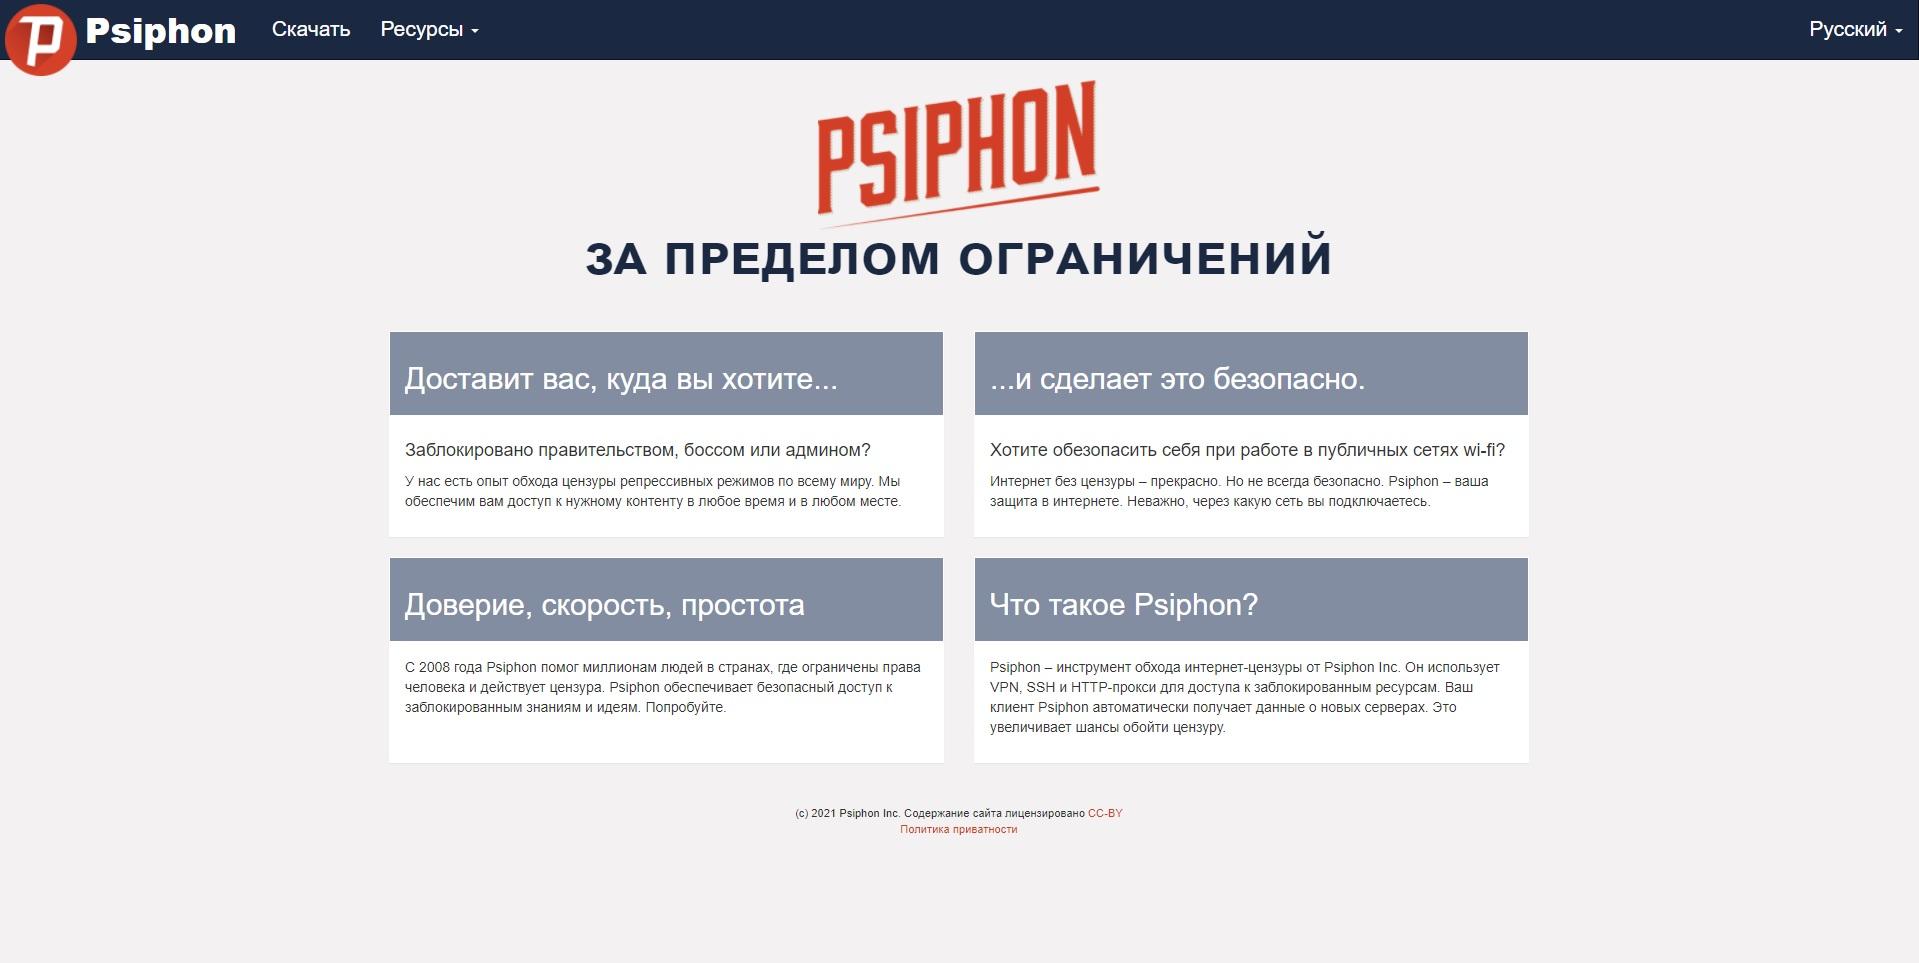 Psiphon3.com – Обзор и отзывы о бесплатном VPN-сервисе